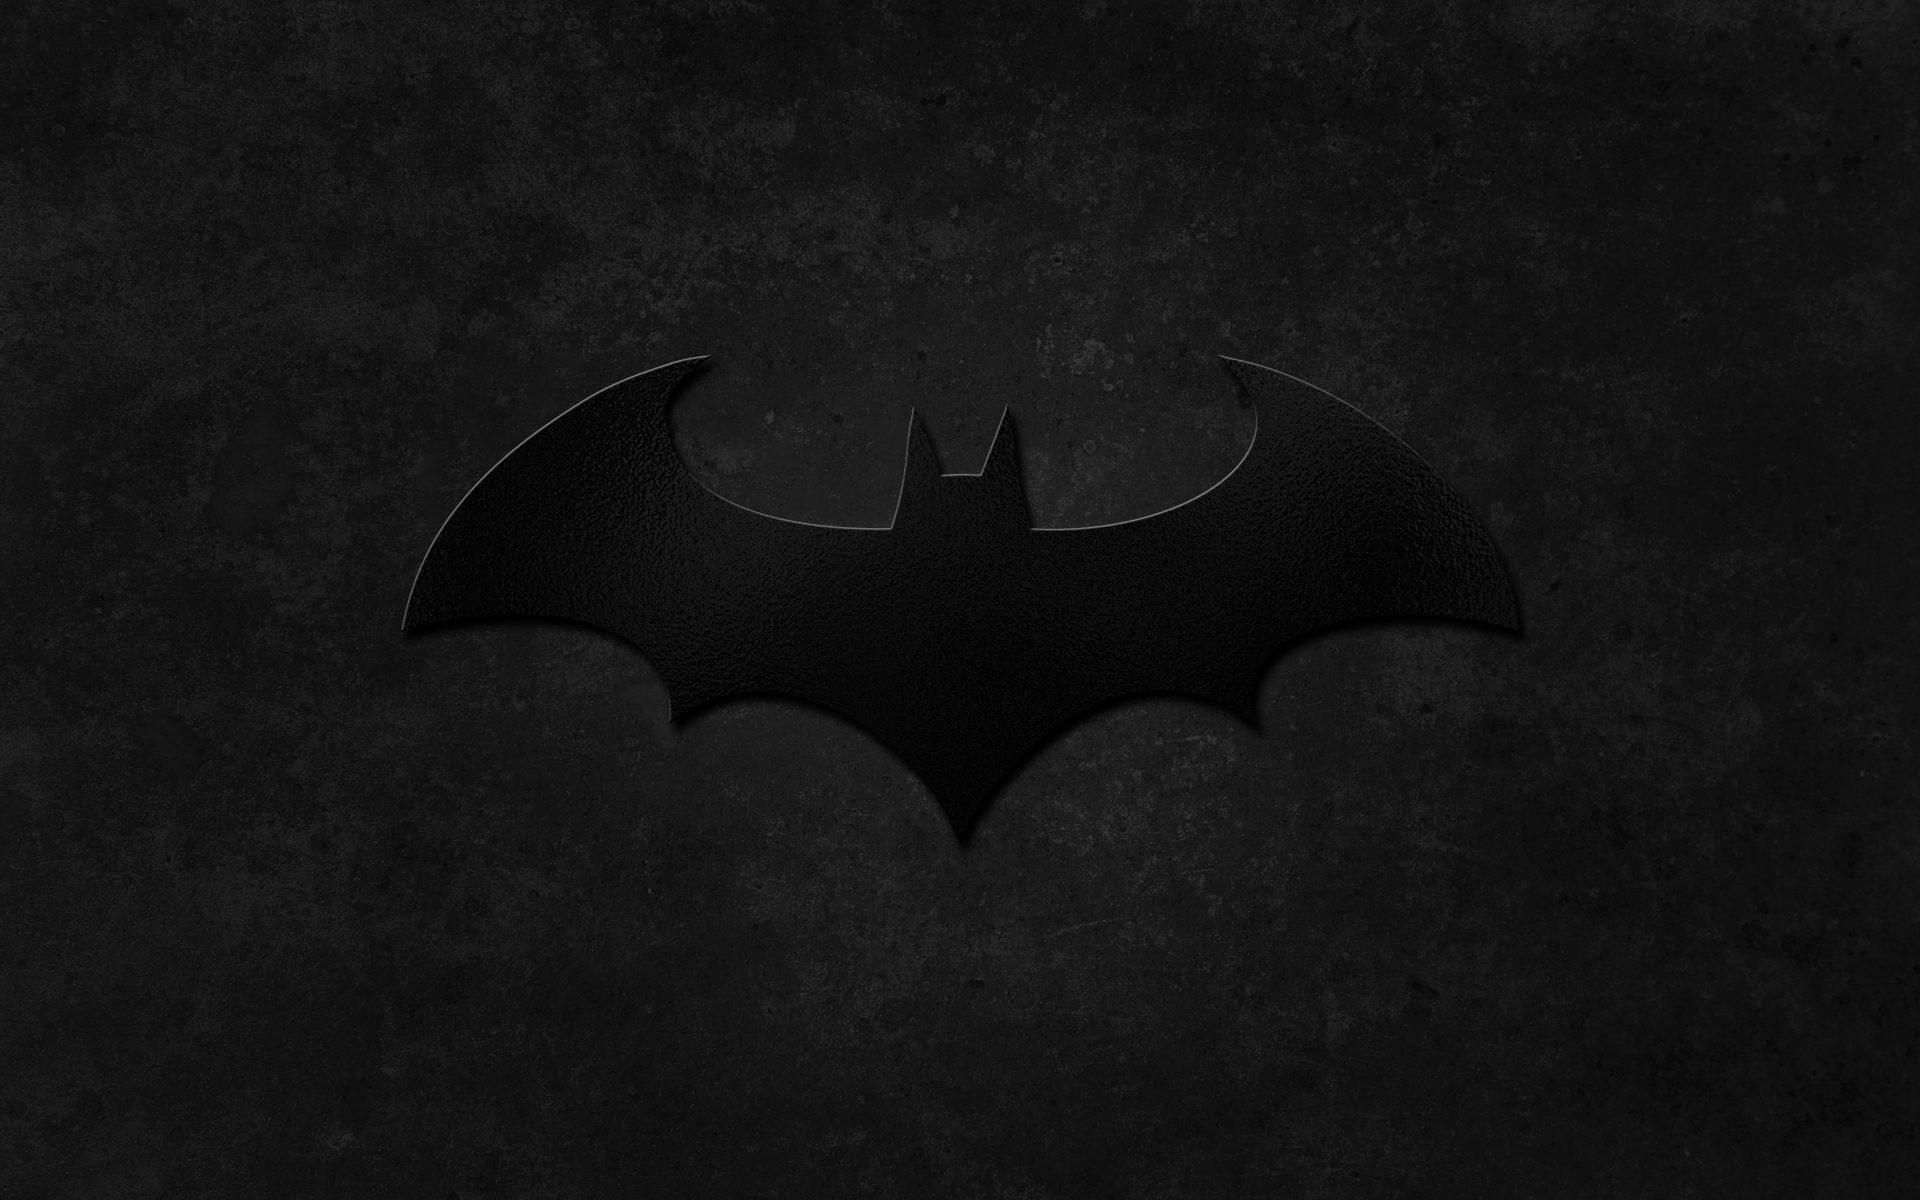 Batman Logo Wallpaper By Pk Enterprises